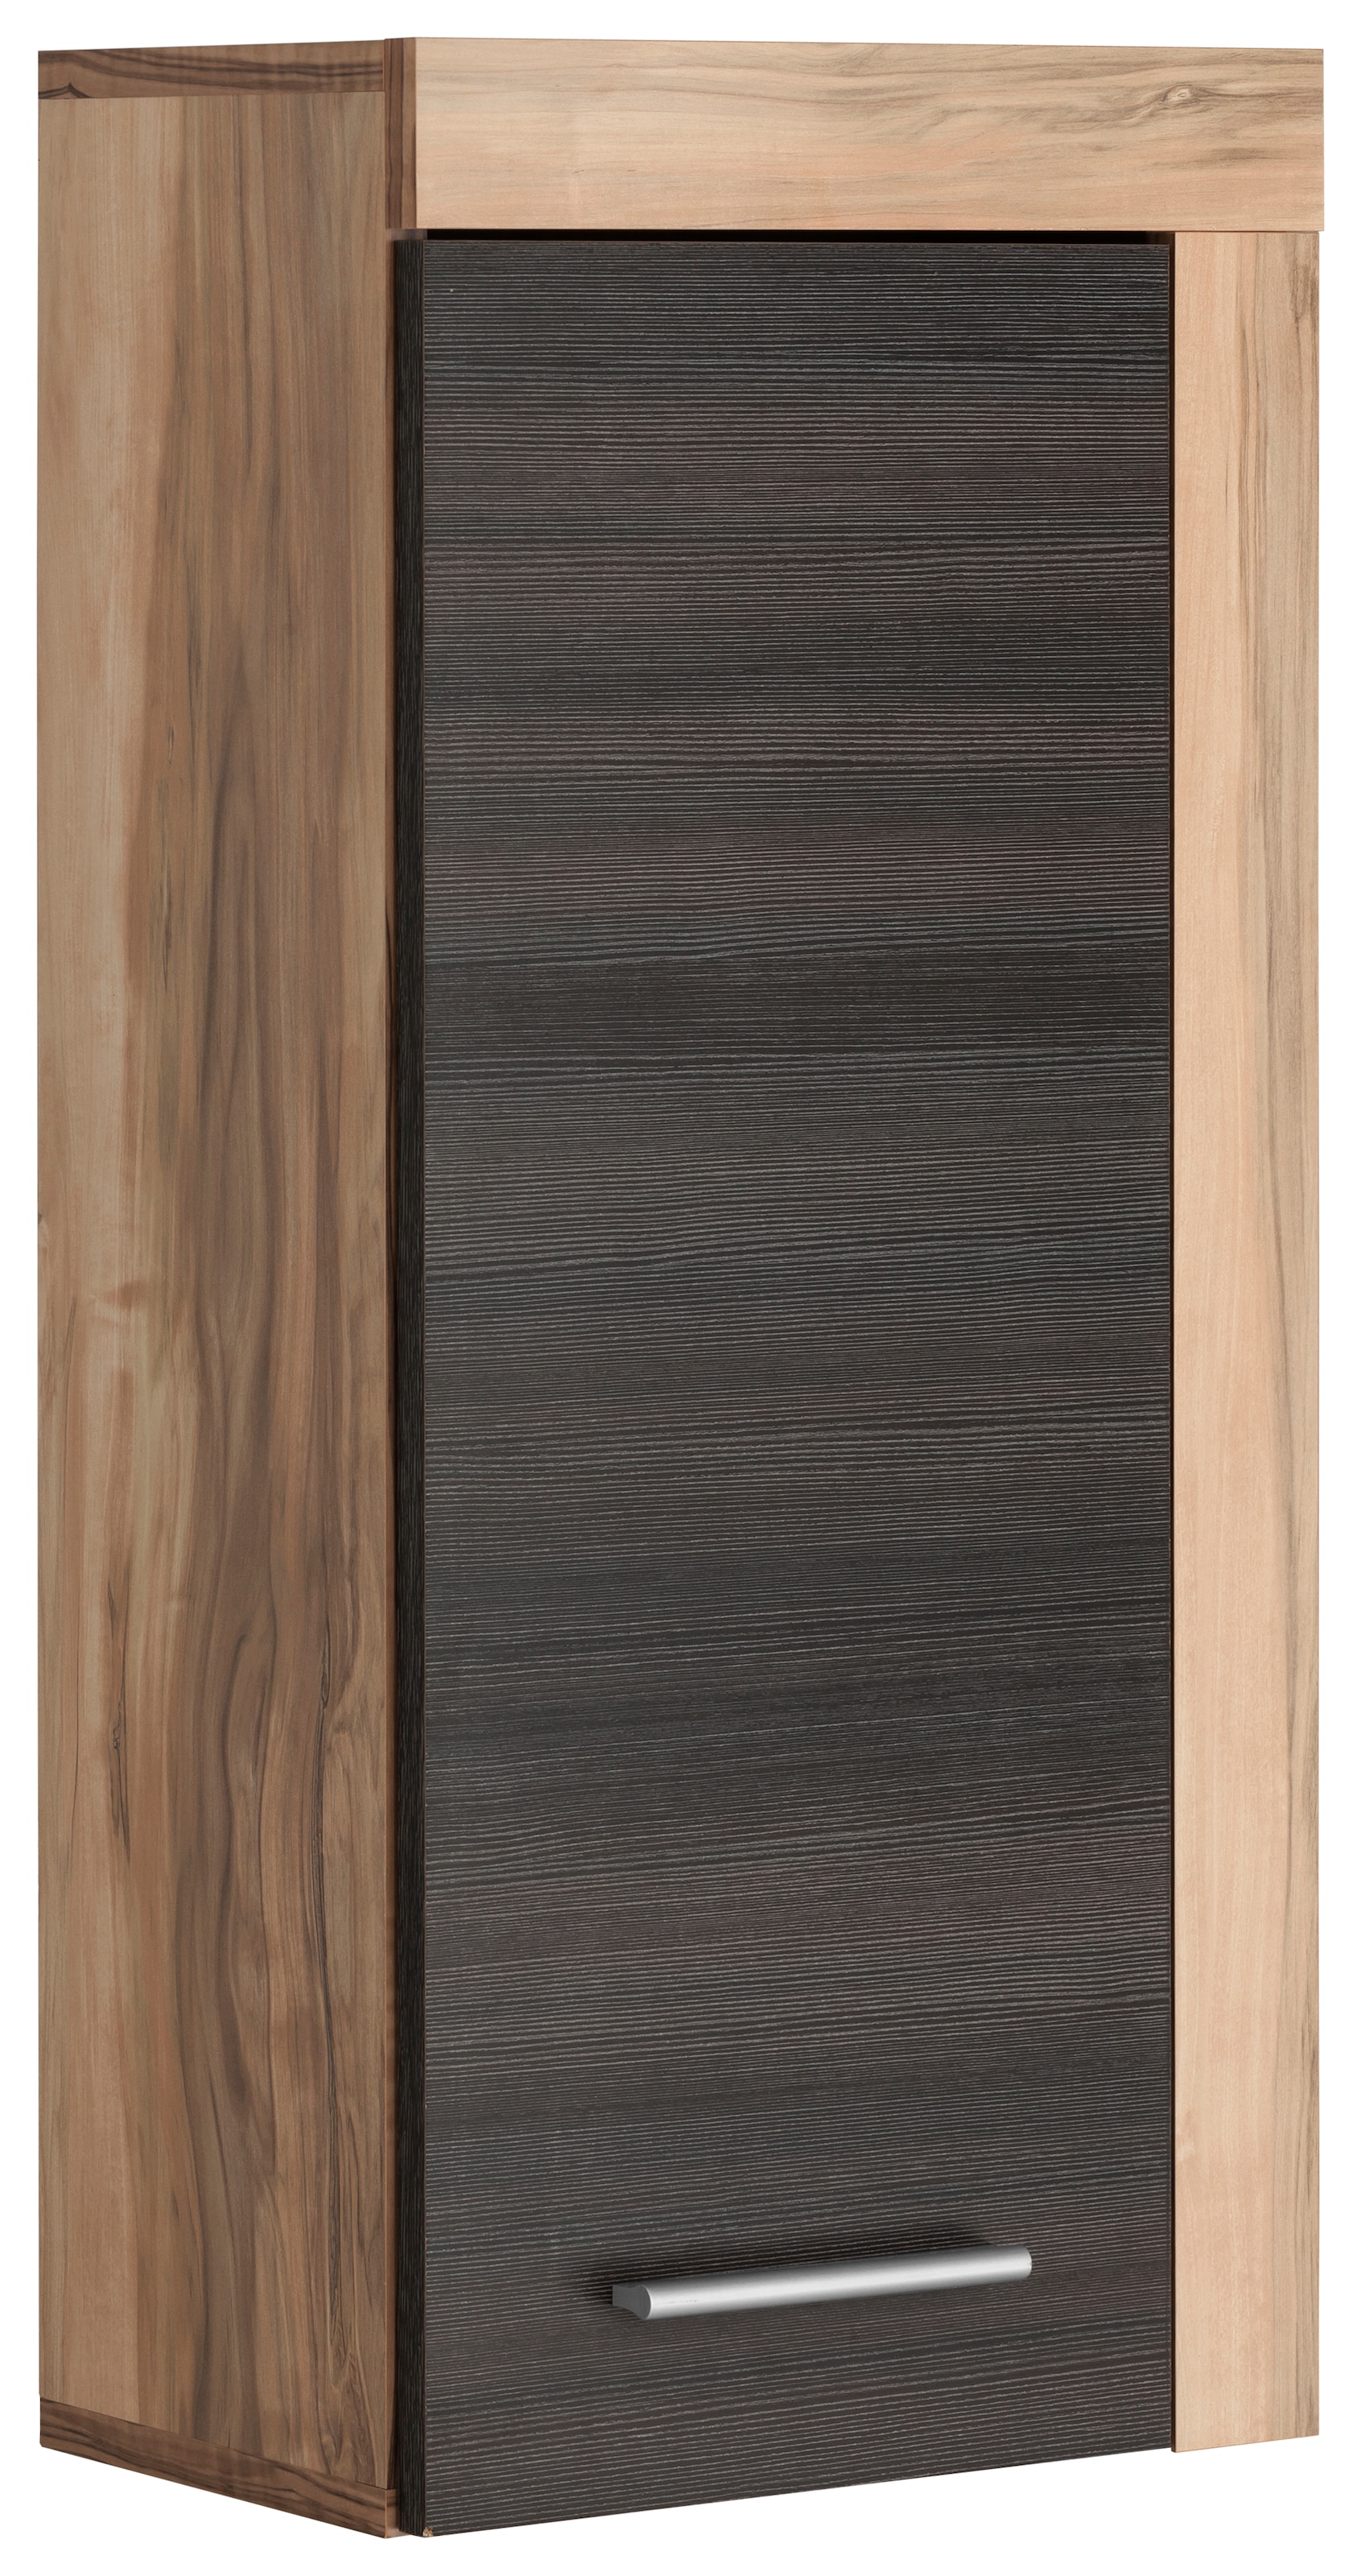 Hängeschrank »Carcassonne«, mit Rahmenoptik in Holztönen, Breite 36 cm